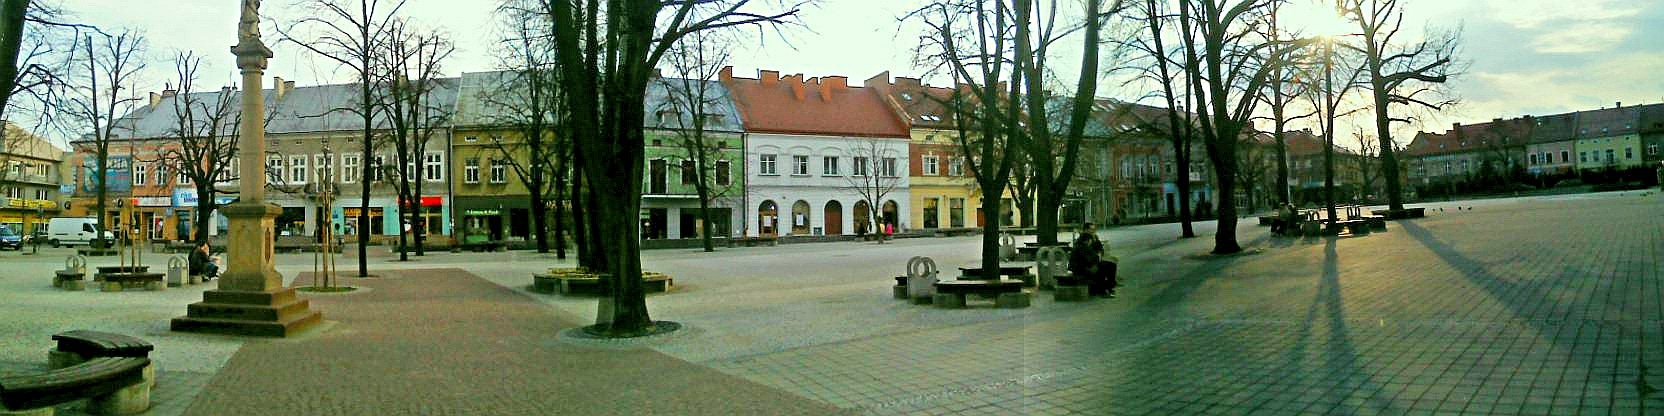 Zdjęcie rynku w Jaśle